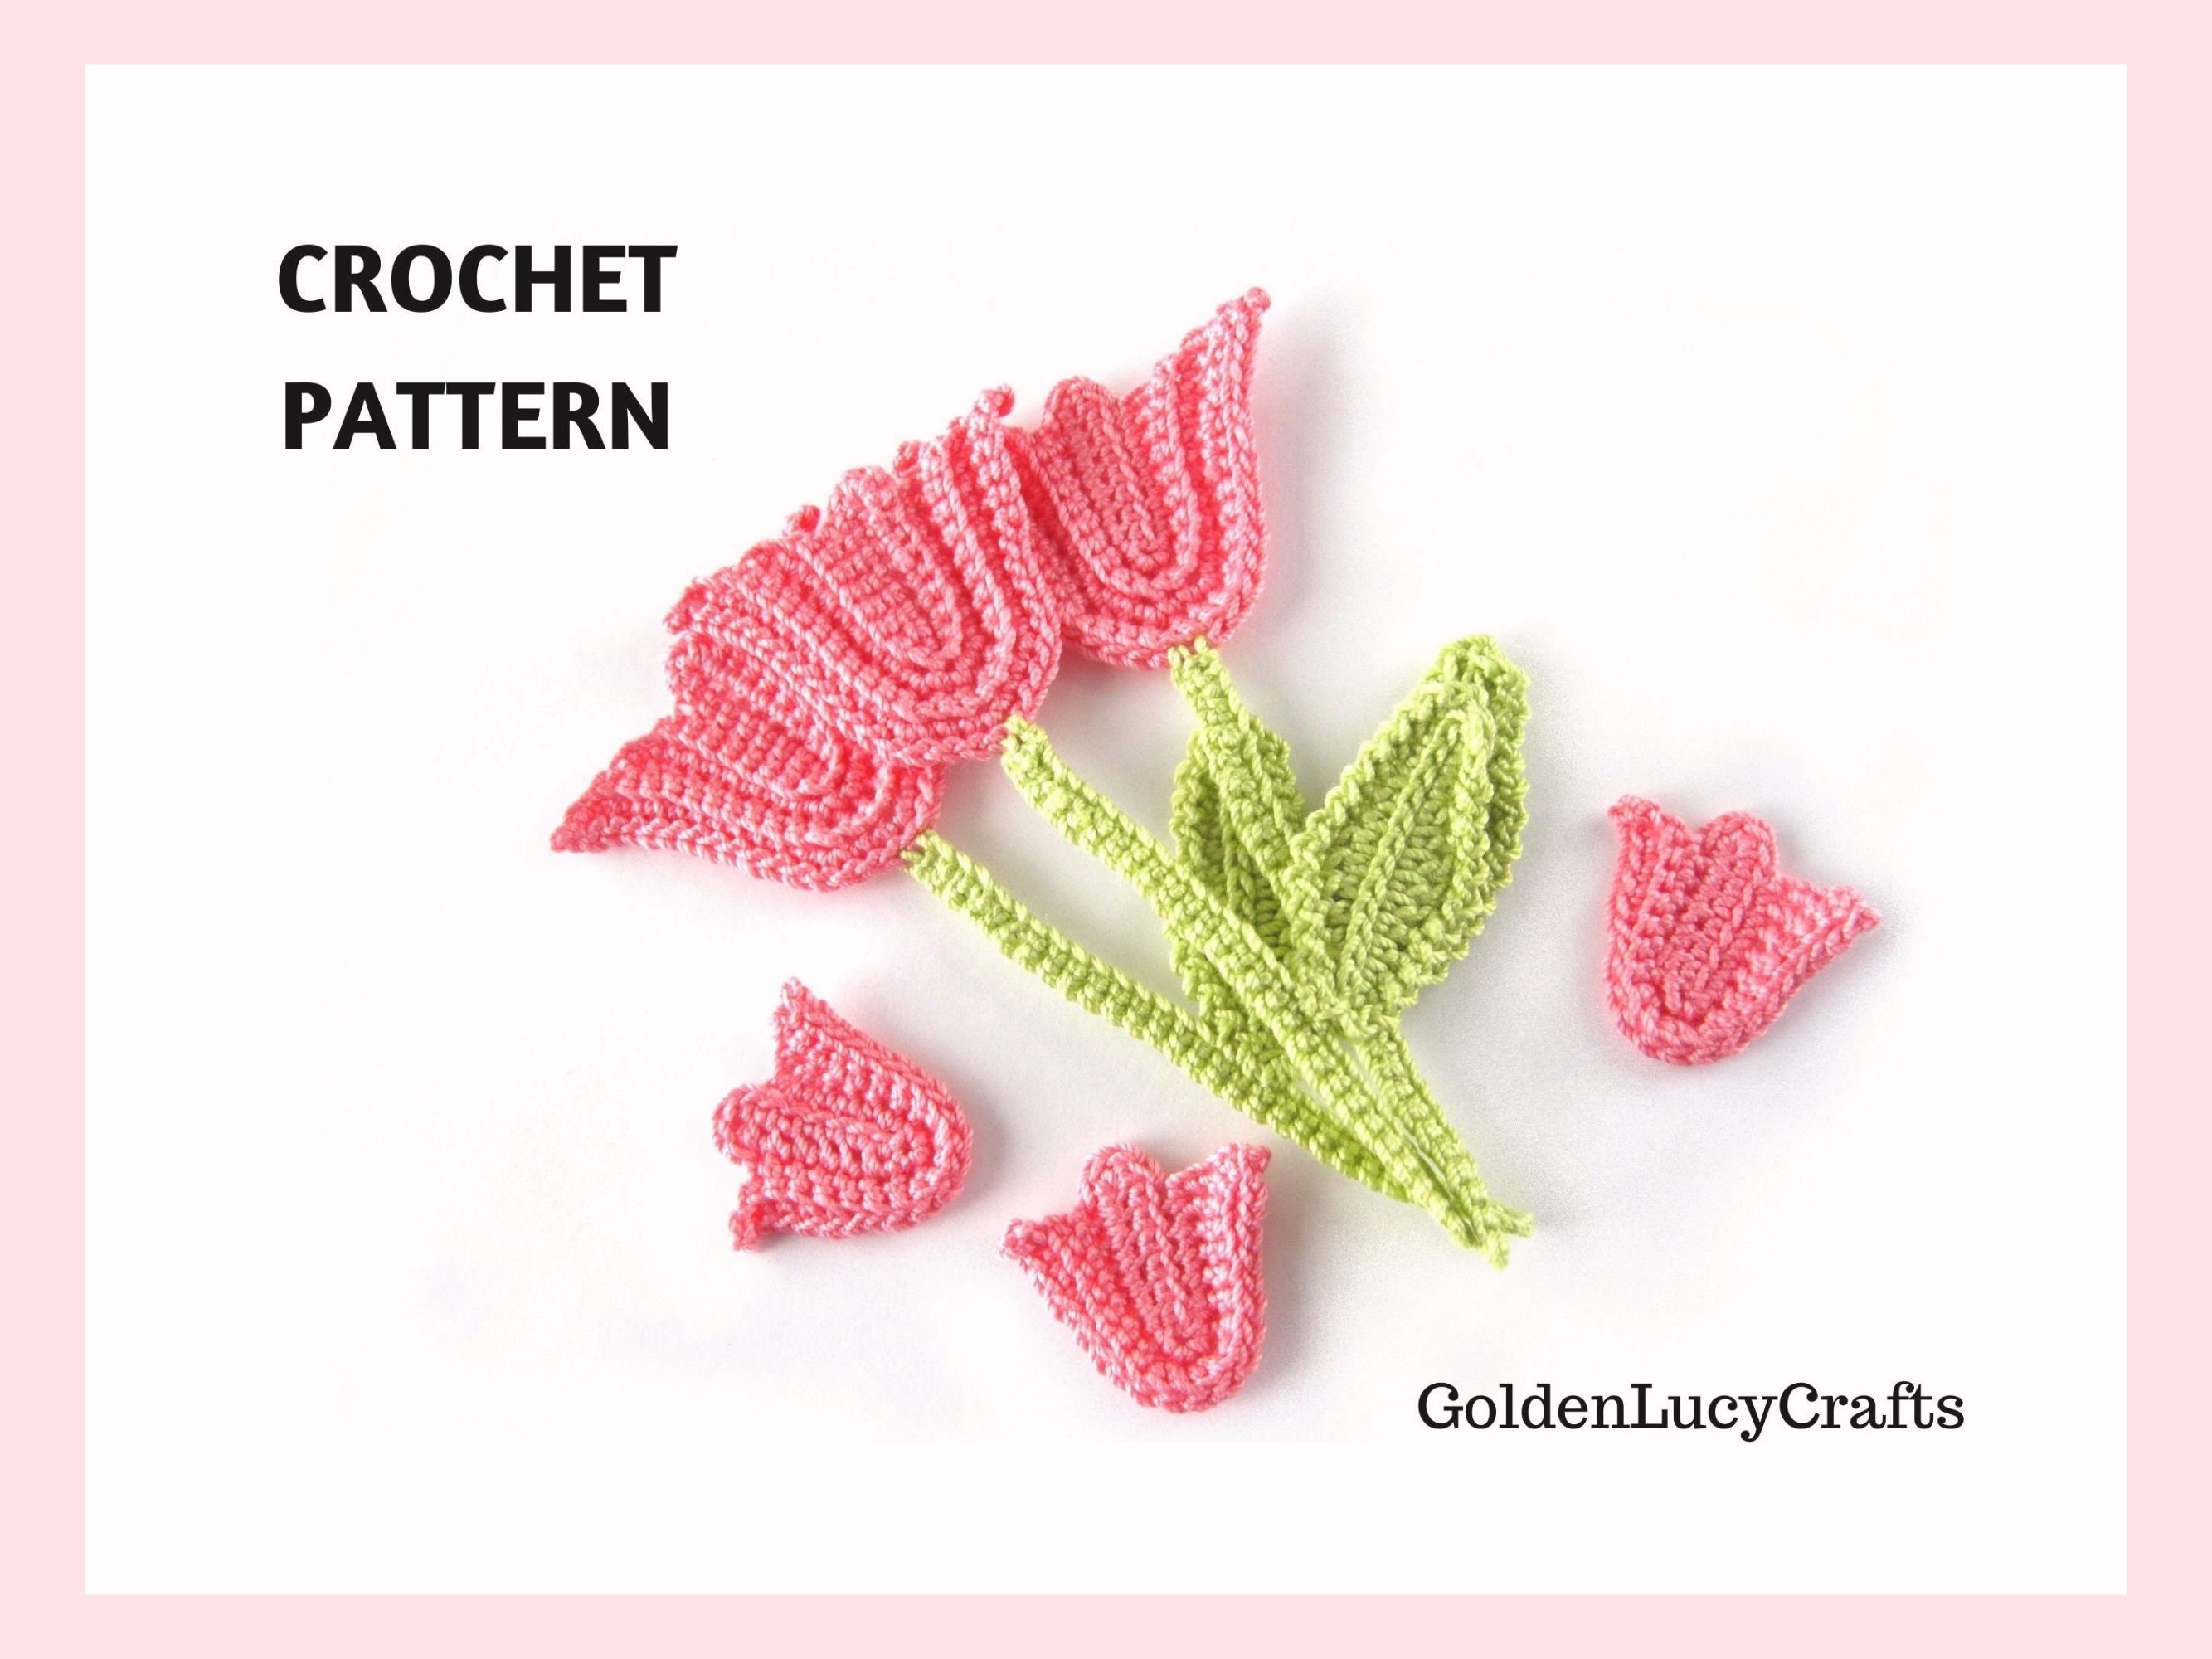 Tulip: Crochet pattern